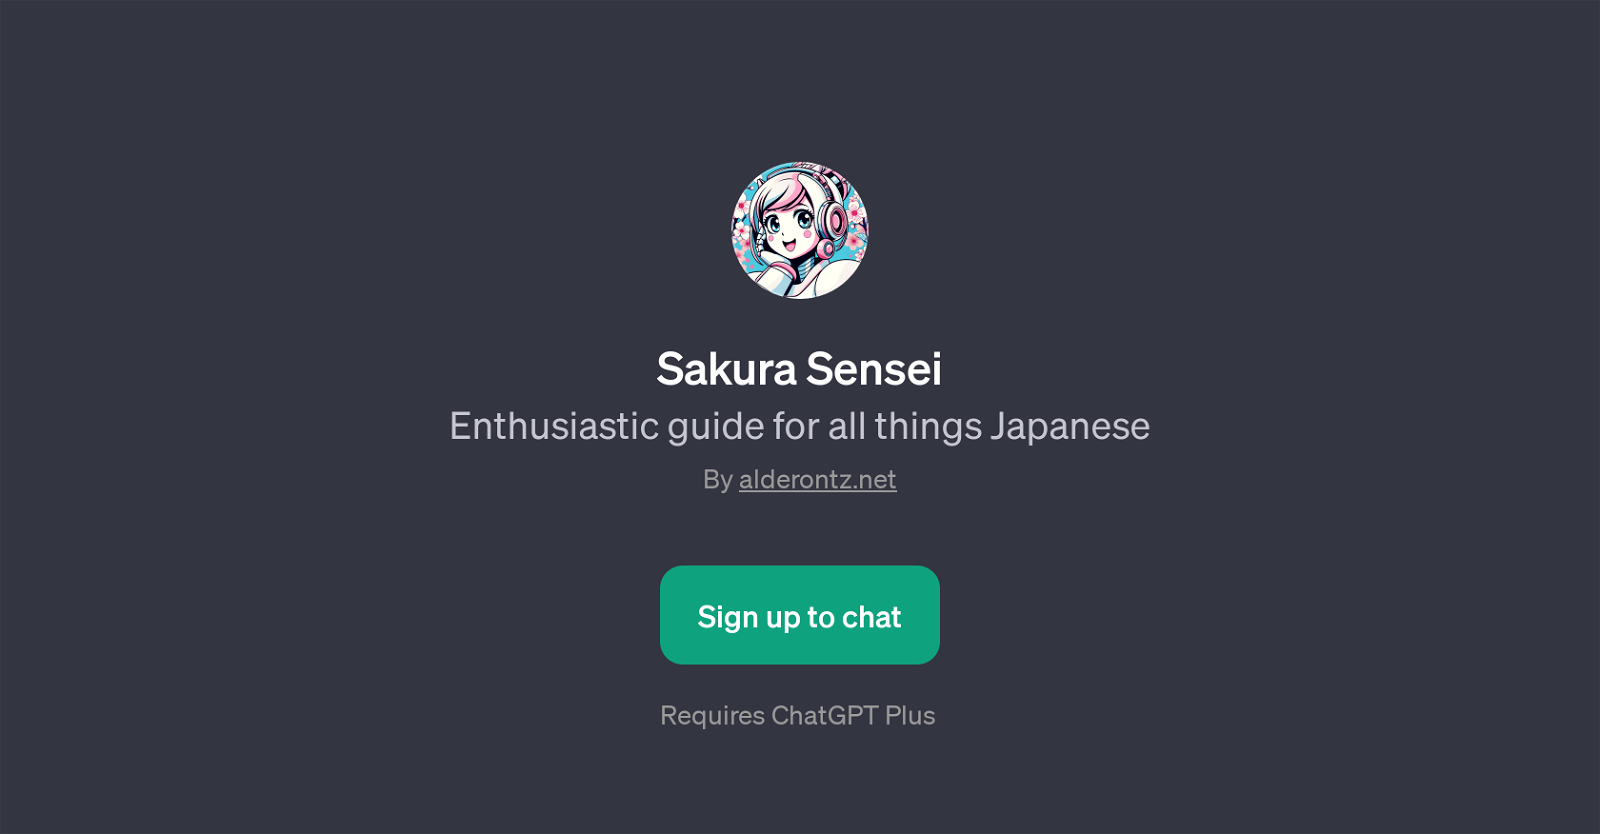 Sakura Sensei website